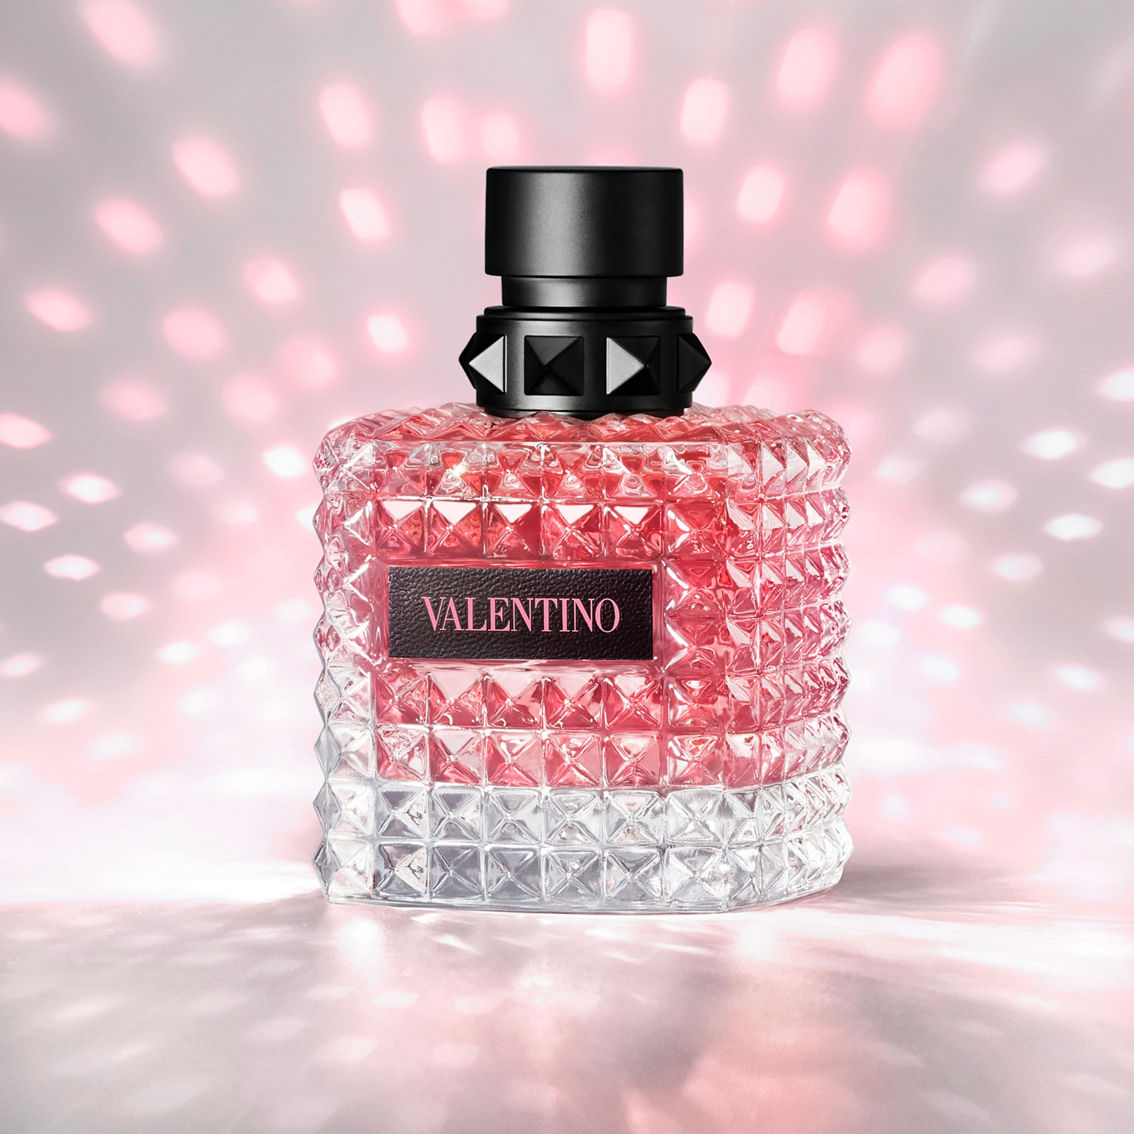 Born in Roma Donna Perfume Gift Set - Valentino